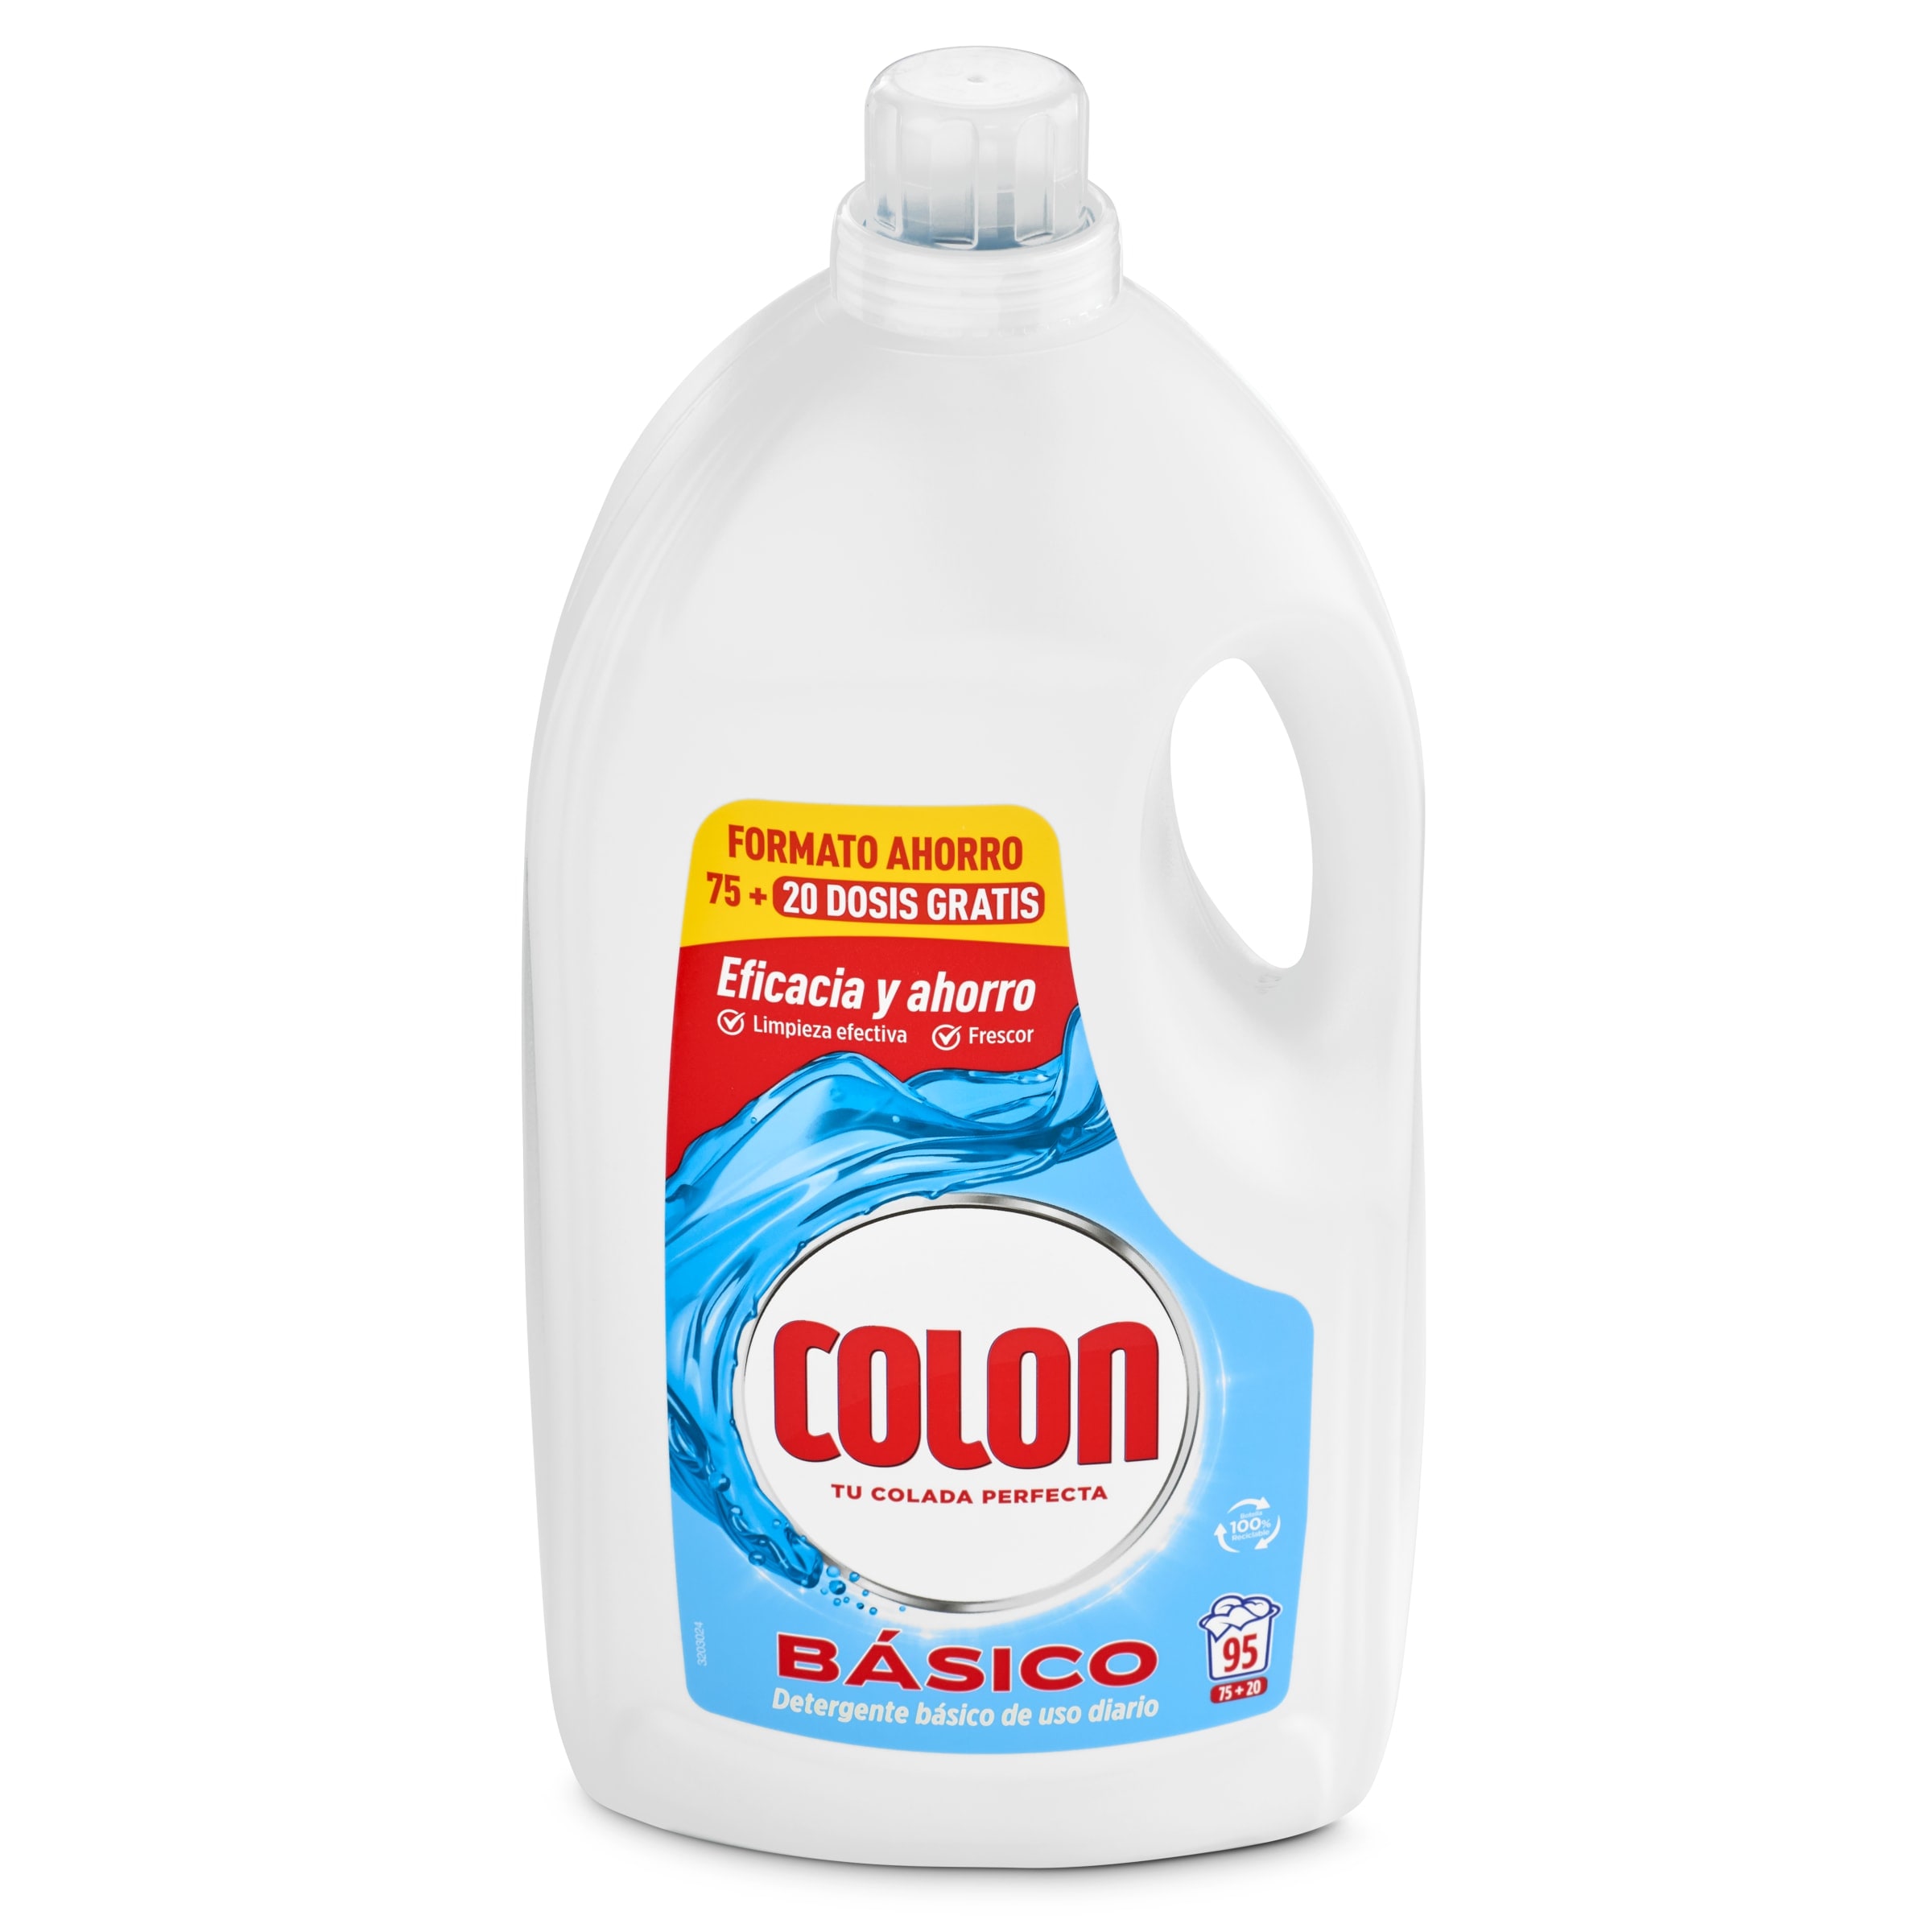 Detergente máquina líquido básico COLON BOTELLA 95 LV - Supermercados DIA